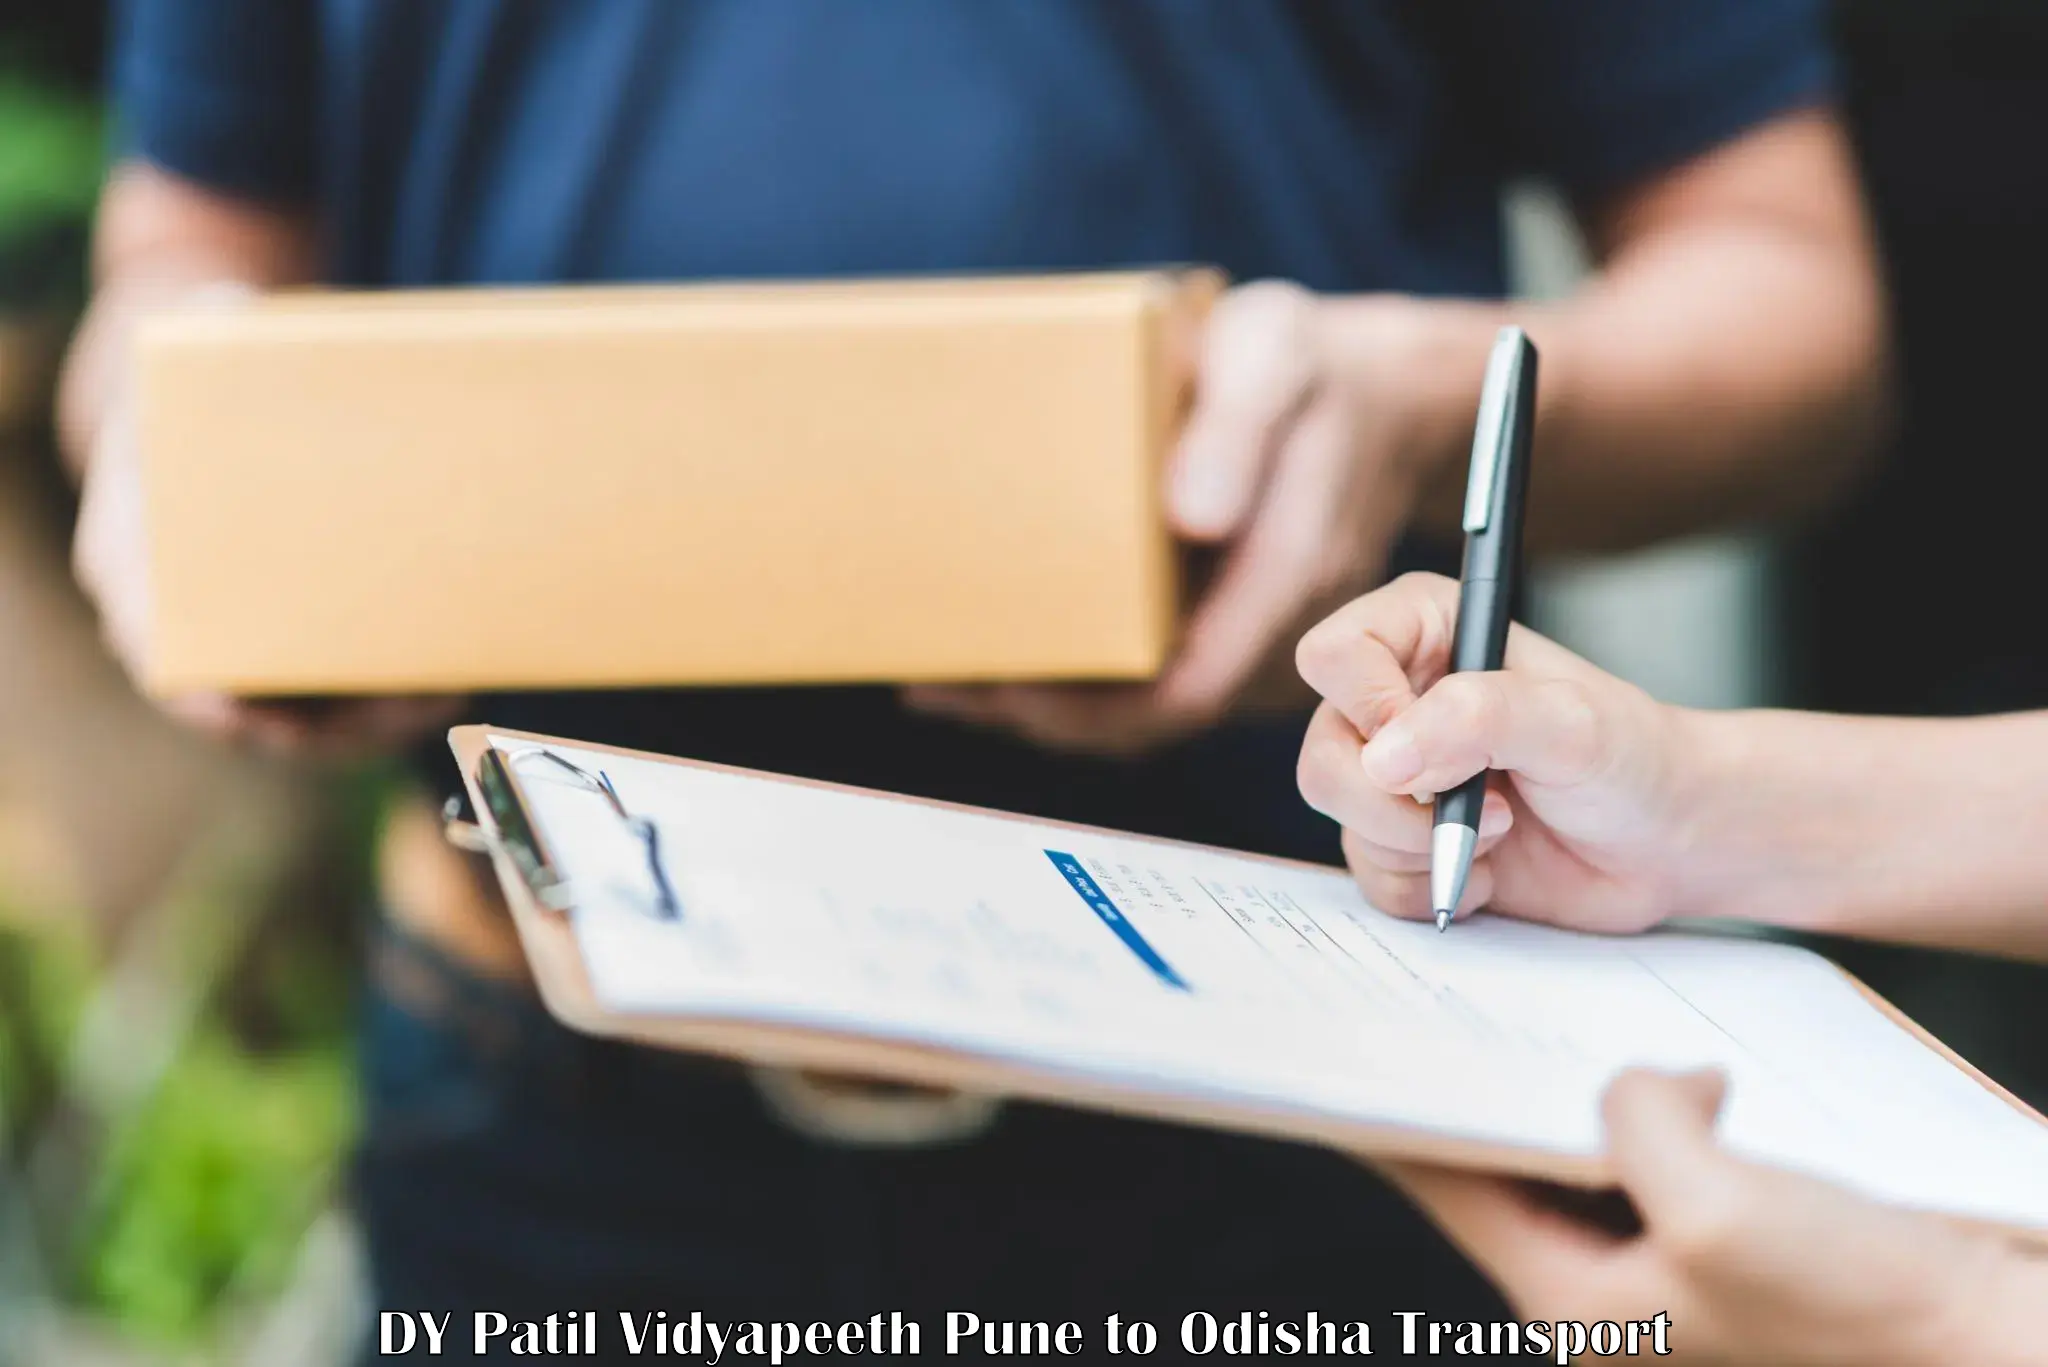 Furniture transport service DY Patil Vidyapeeth Pune to Baleswar